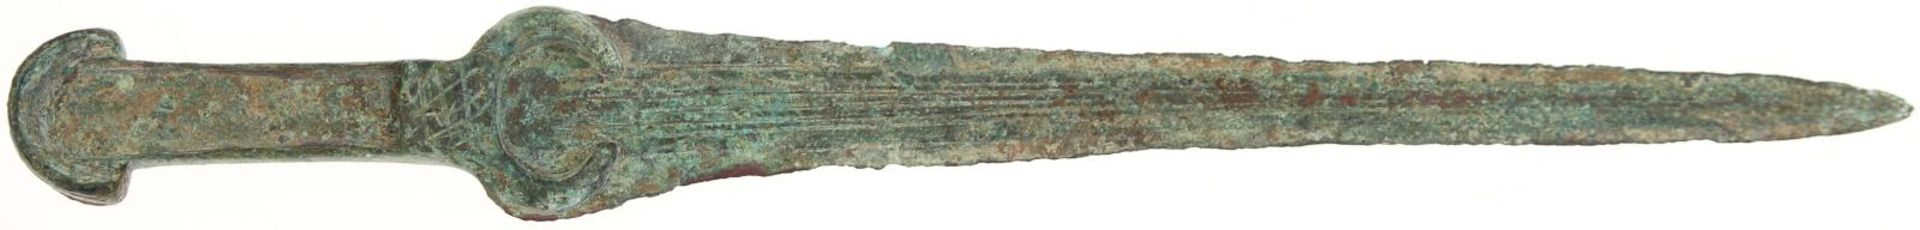 Dolch persisch, im Stile Kurdistan, wohl Kopie 20 Jh. V. Chr. Bronze, Bodenfund L: 31.8cm Zustand